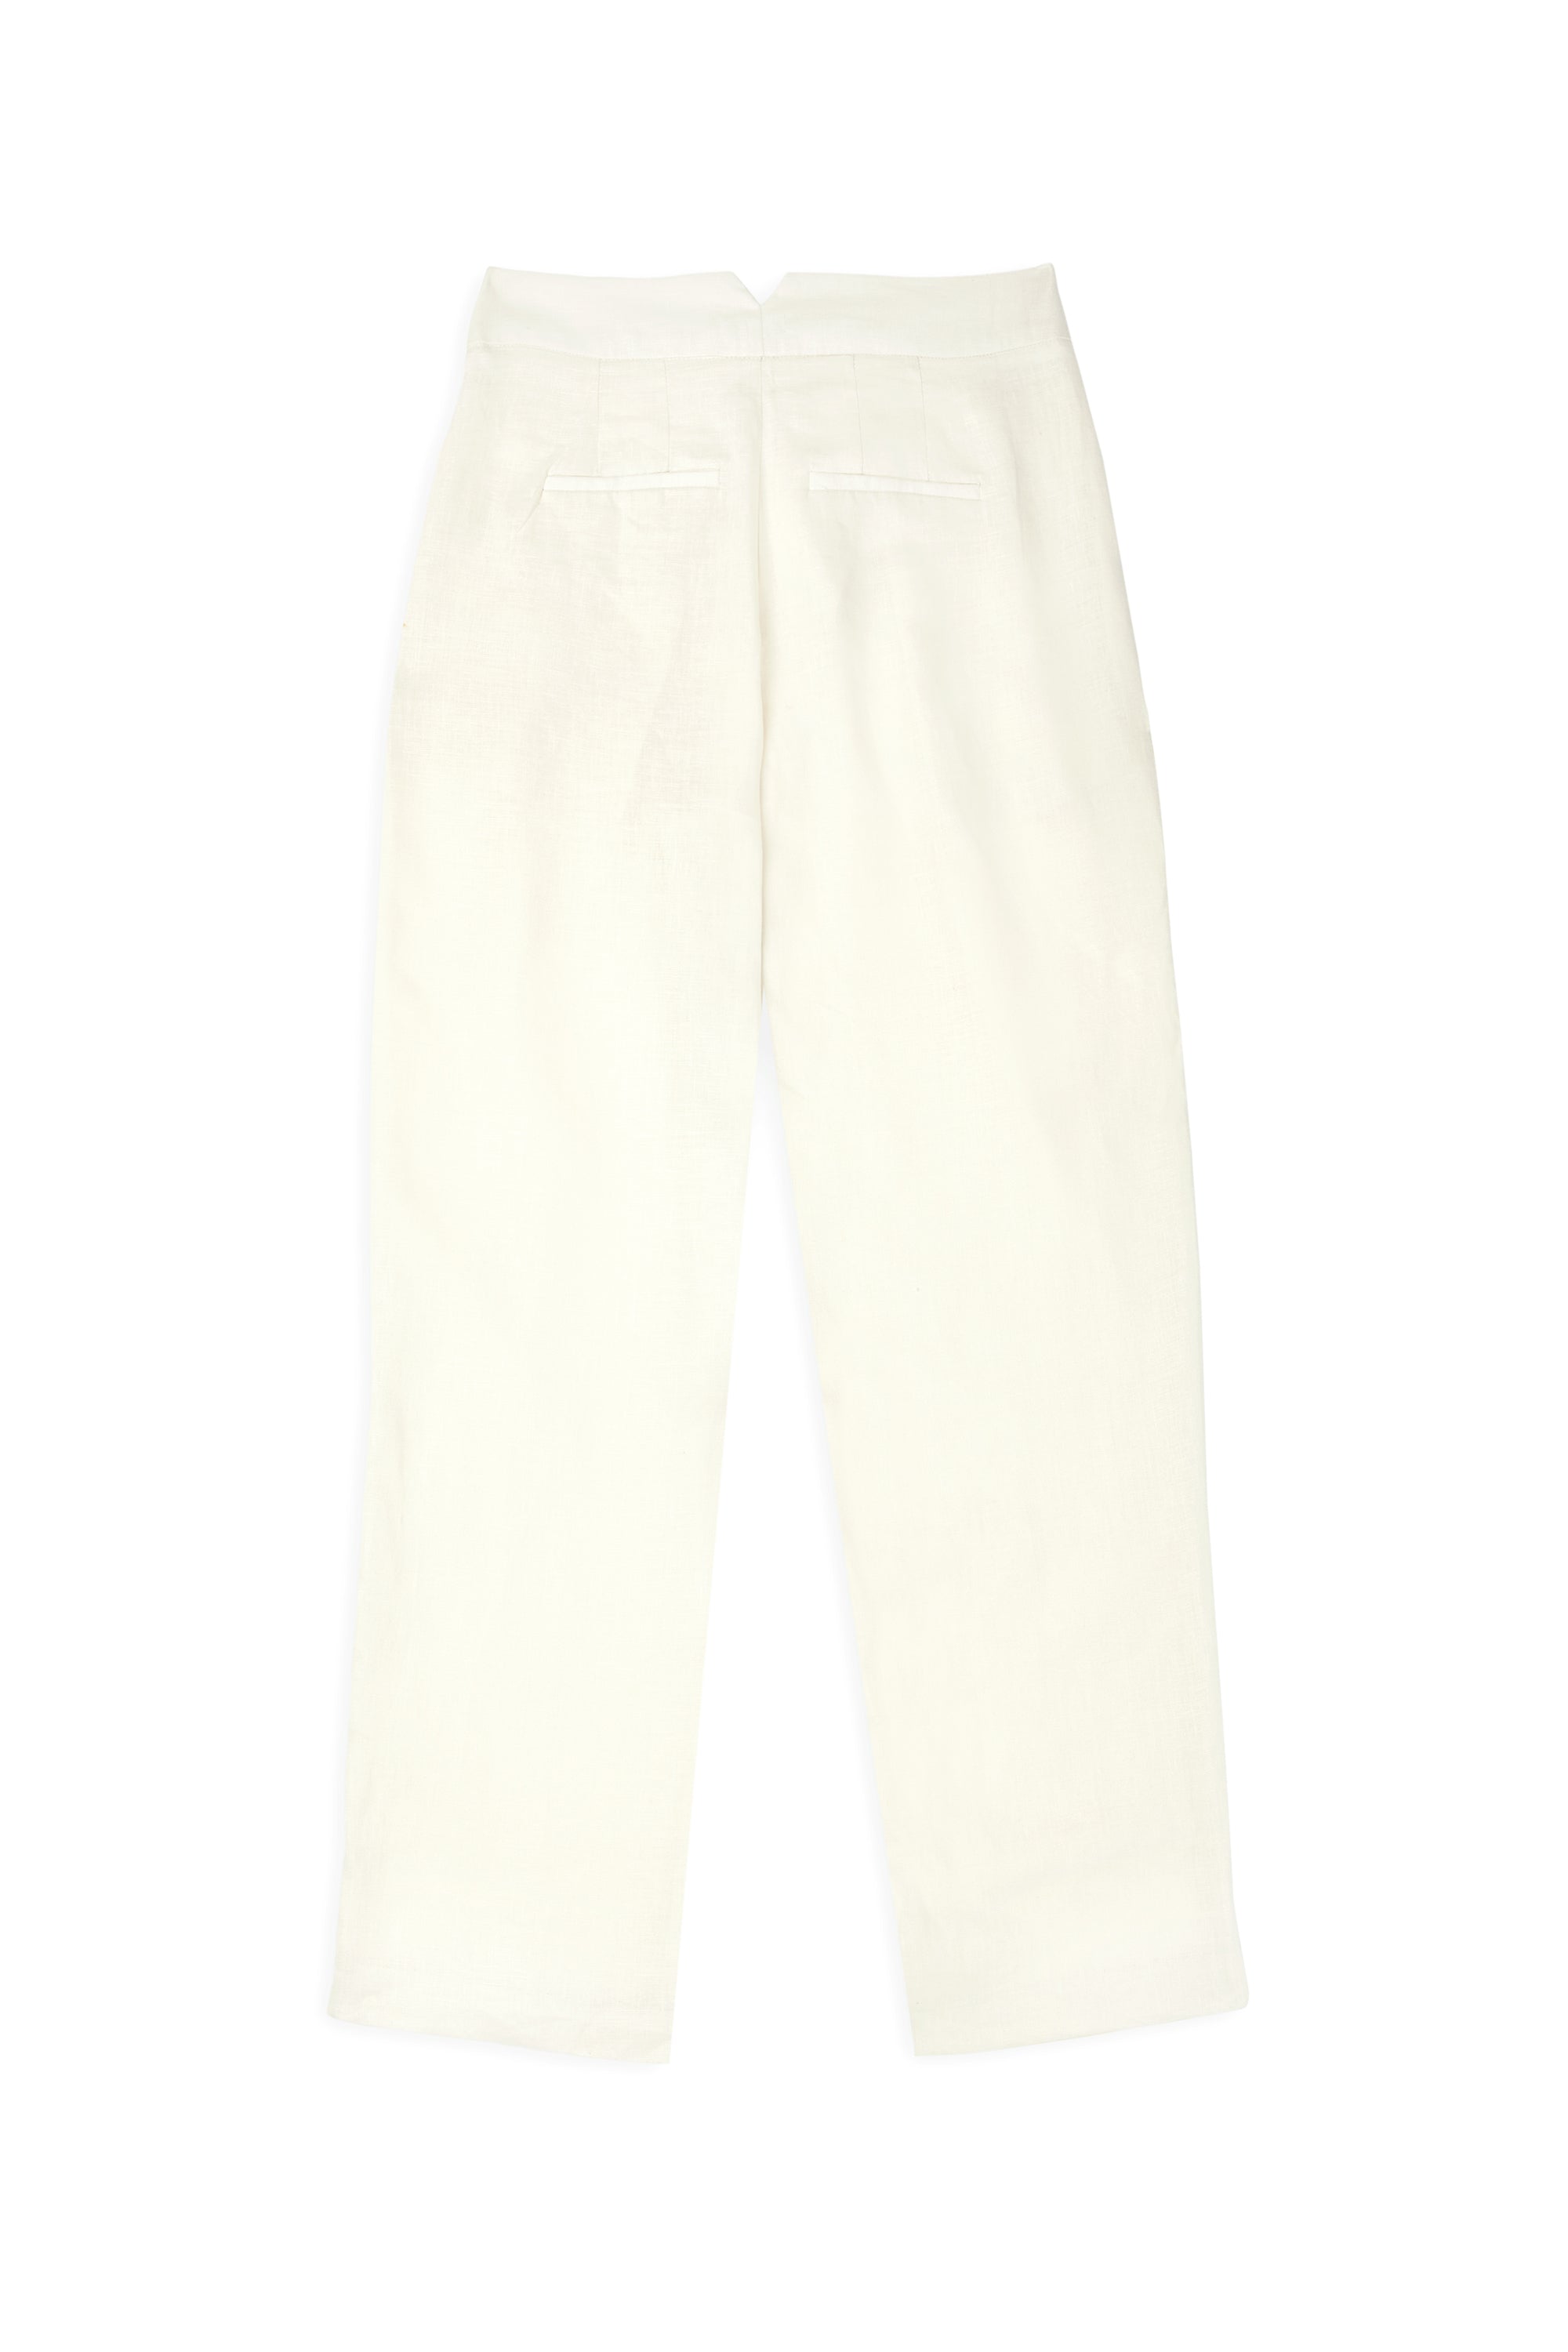 Pantalon Pampa blanco